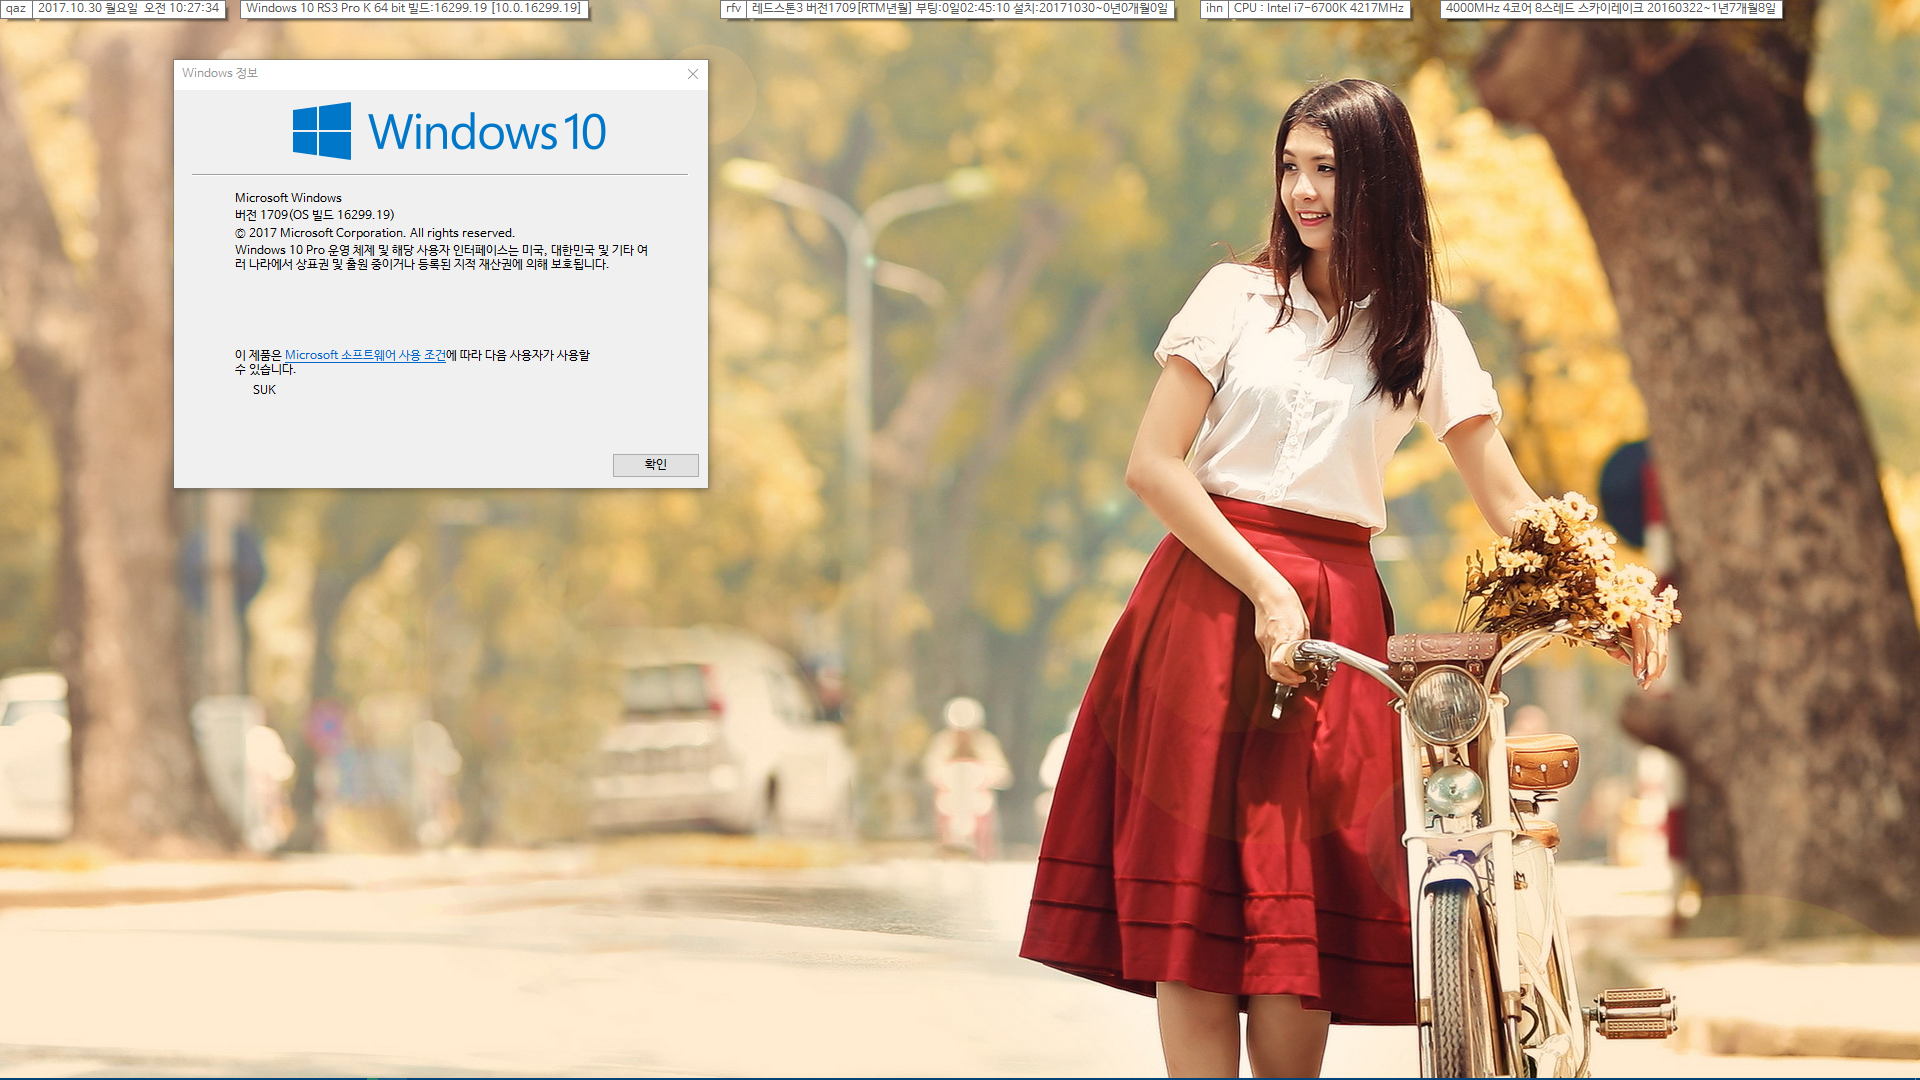 윈도10 실사용 설치 기록- Windows 10 버전1709 레드스톤3 [16299.19]빌드 업데이트 통합본으로 설치 2017-10-30_102734.png